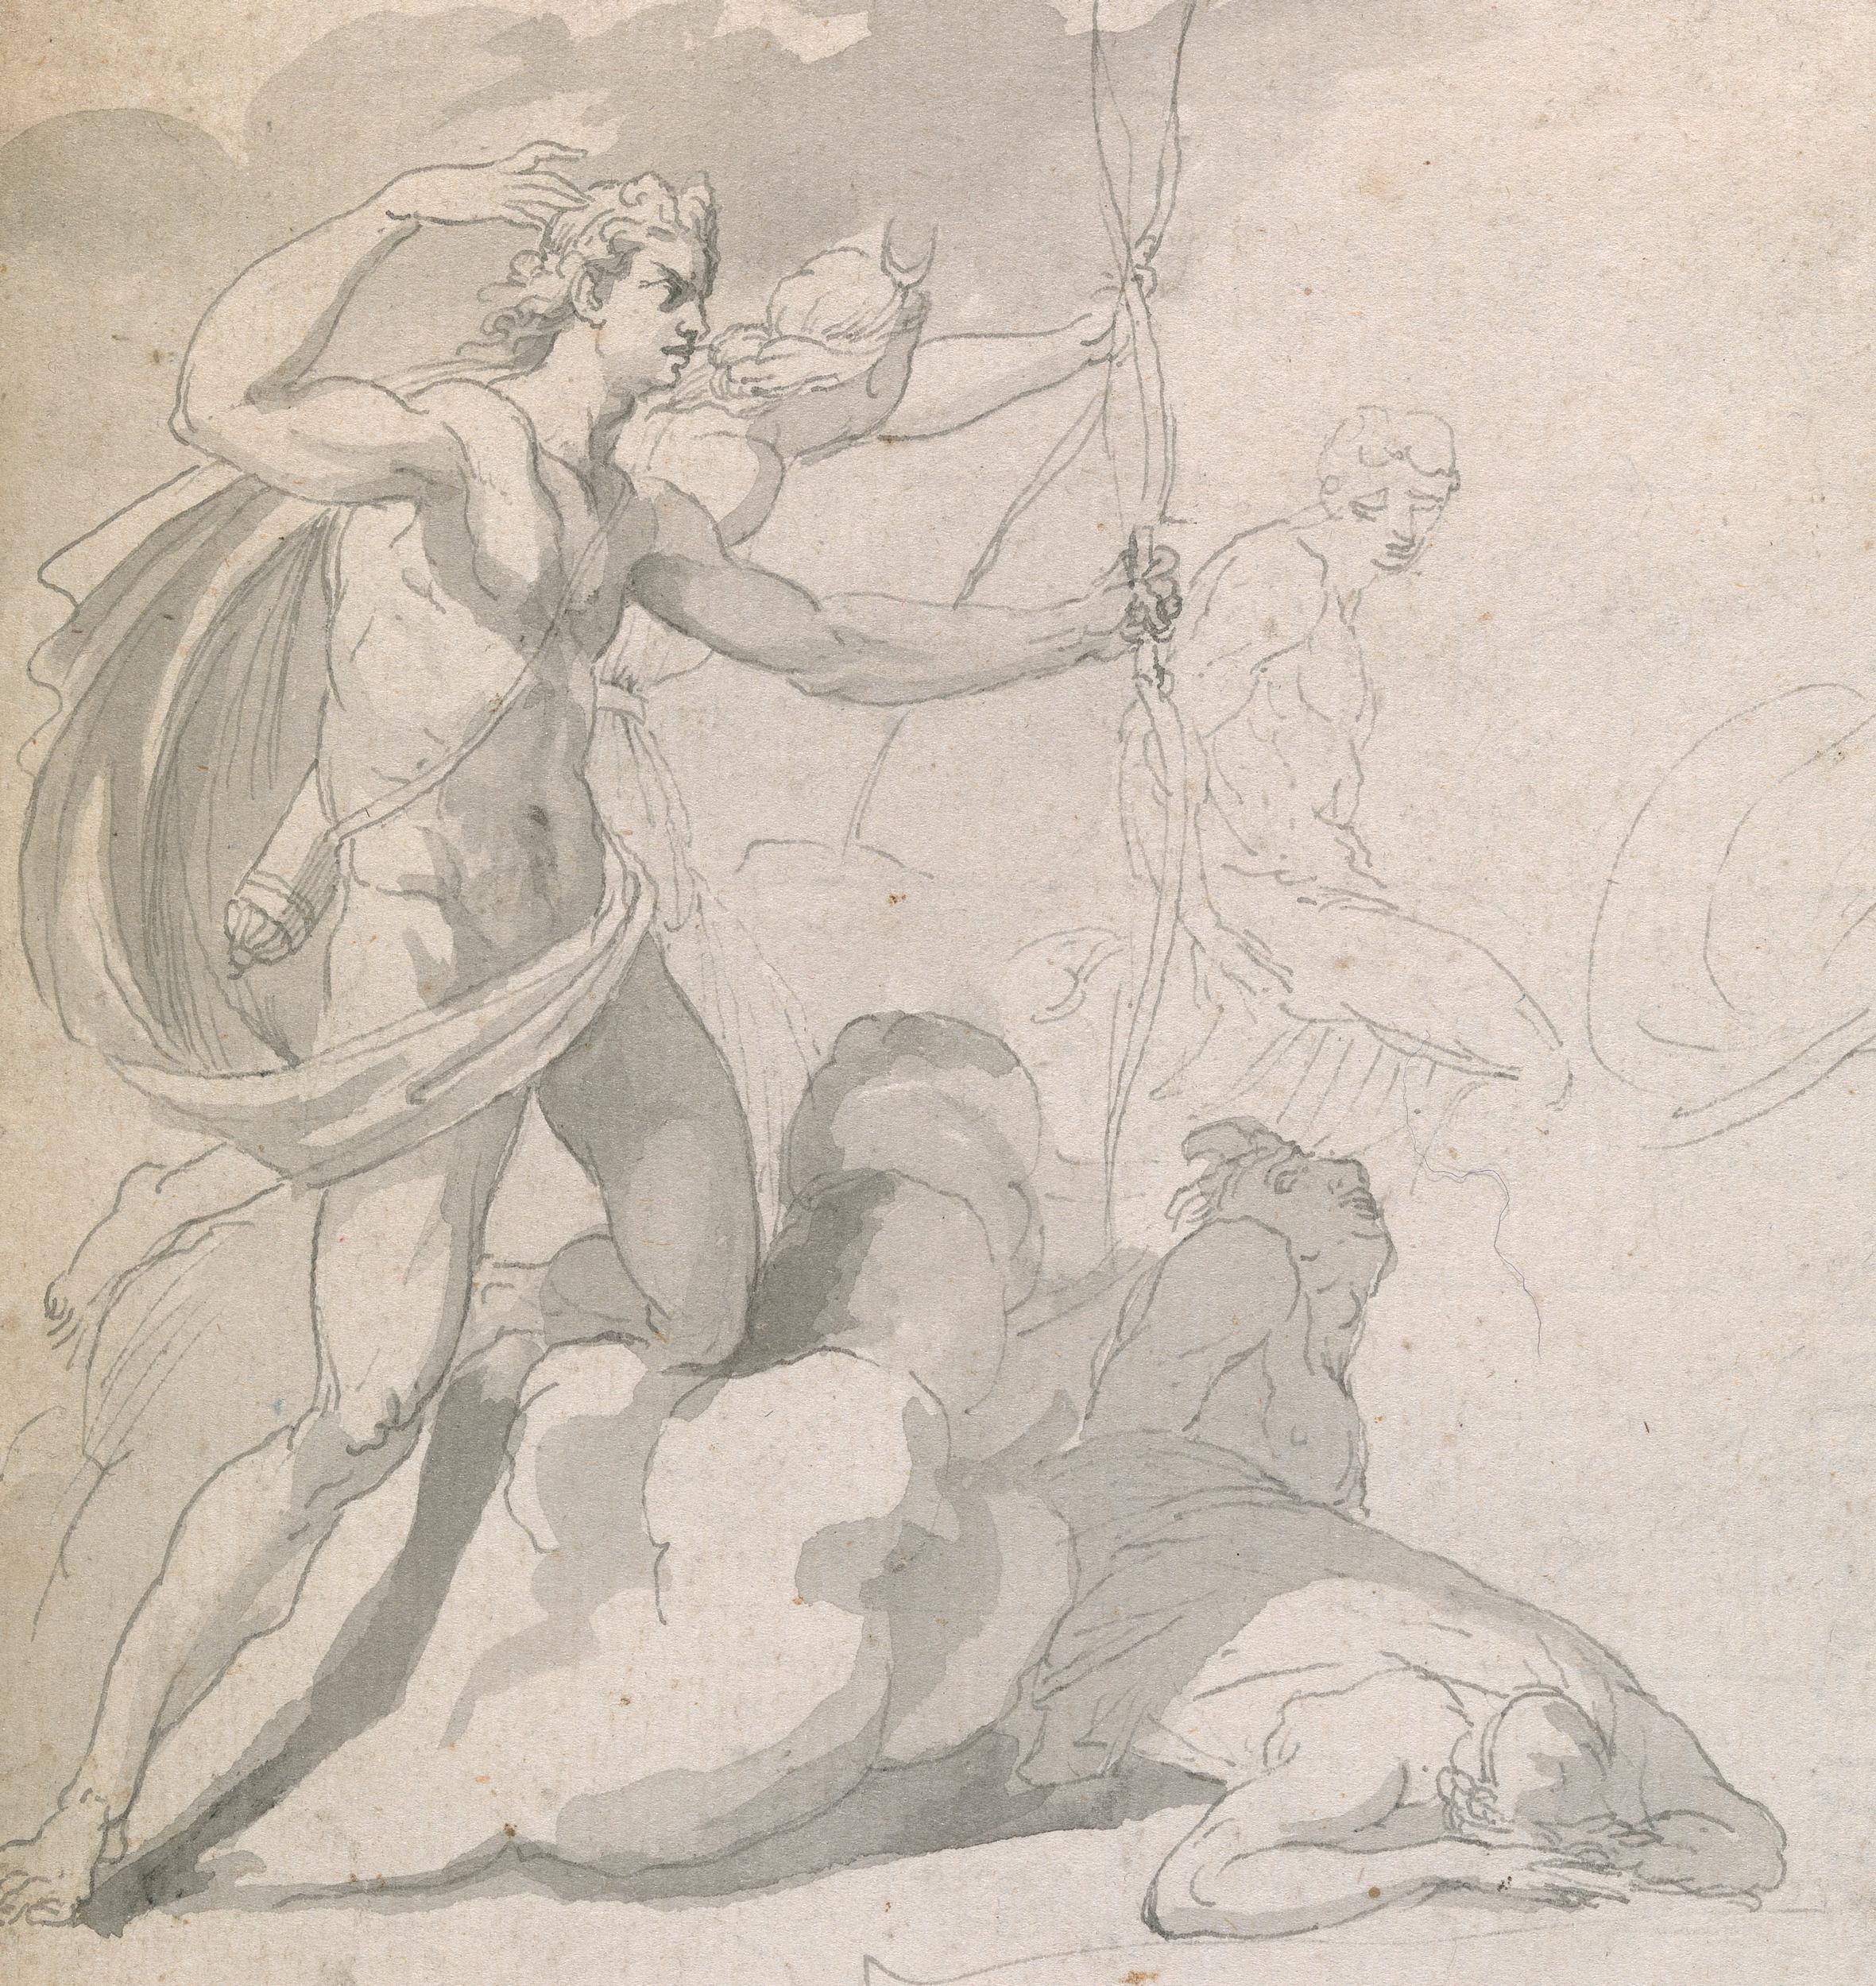 Zeichnung eines alten Meisters aus dem achtzehnten Jahrhundert - Apollo zerstört die Kinder von Niobe – Art von John Hamilton Mortimer